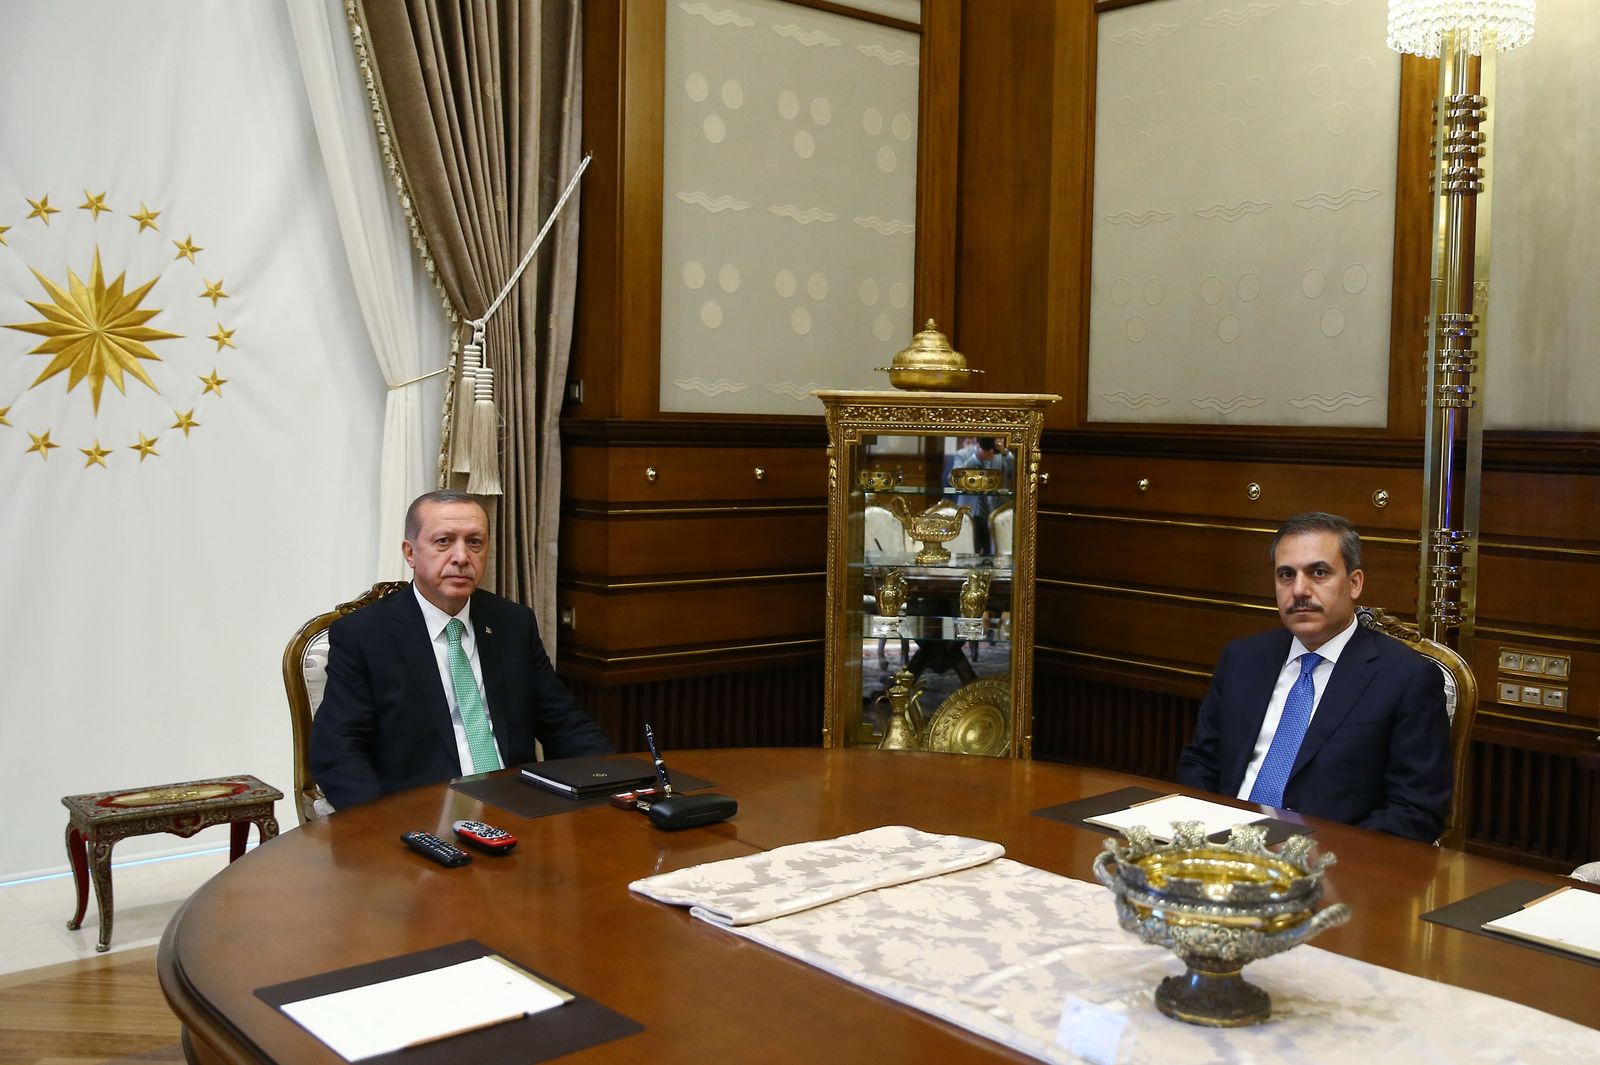 الرئيس التركي رجب طيب أردوغان يجتمع برئيس الاستخبارات التركية هاكان فيدان، أنقرة 22 يوليو 2016 - Anadolu Agency